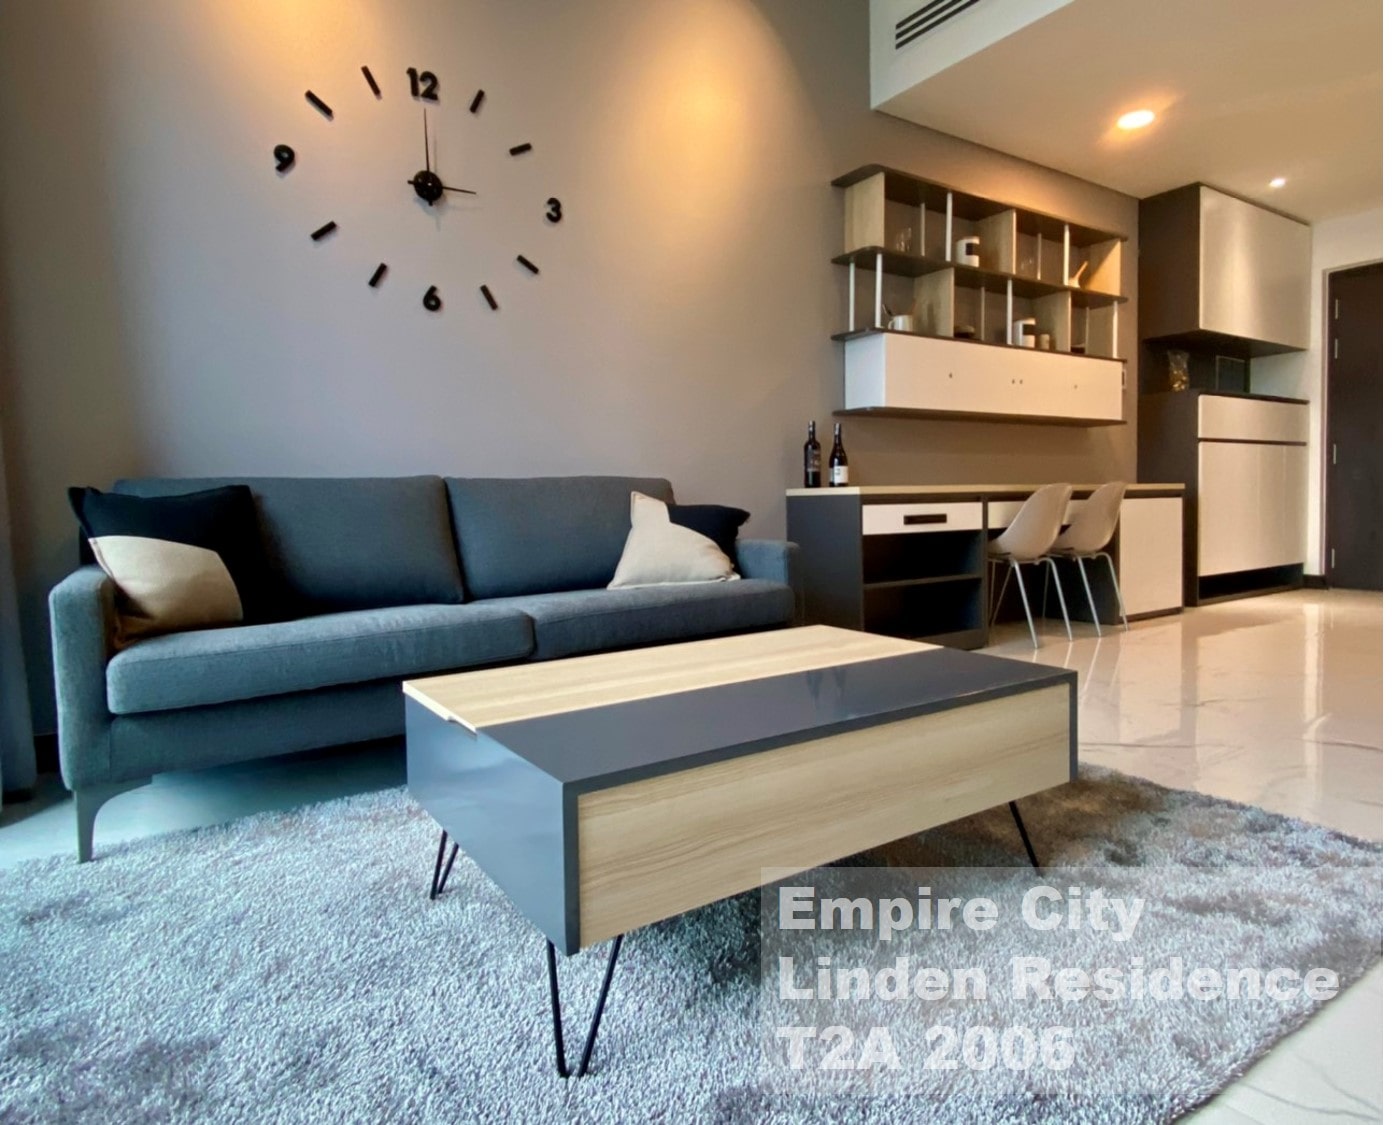 Cho thuê căn hộ Empire City tháp Linden Residences 1 phòng ngủ full nội thất 63.8m2 - EC109